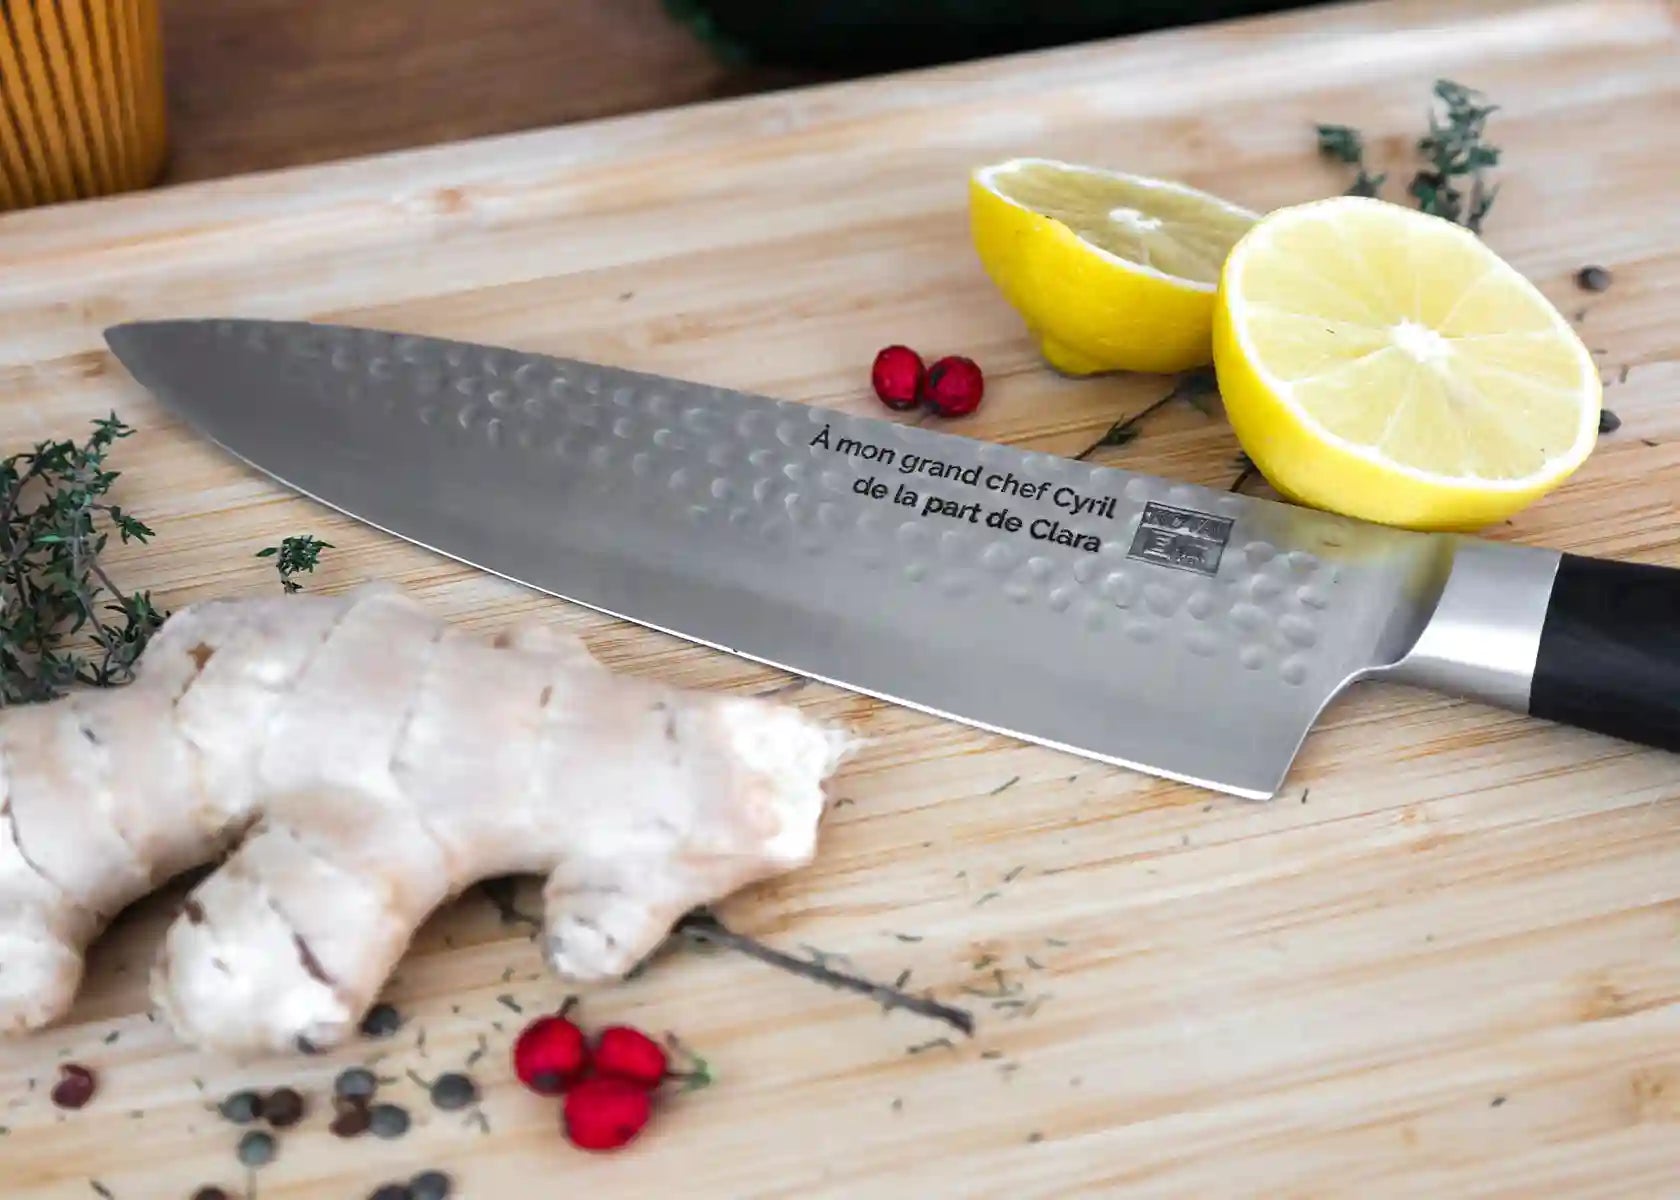 Gyuto Chef Knife - Pakka Collection - 200 mm blade